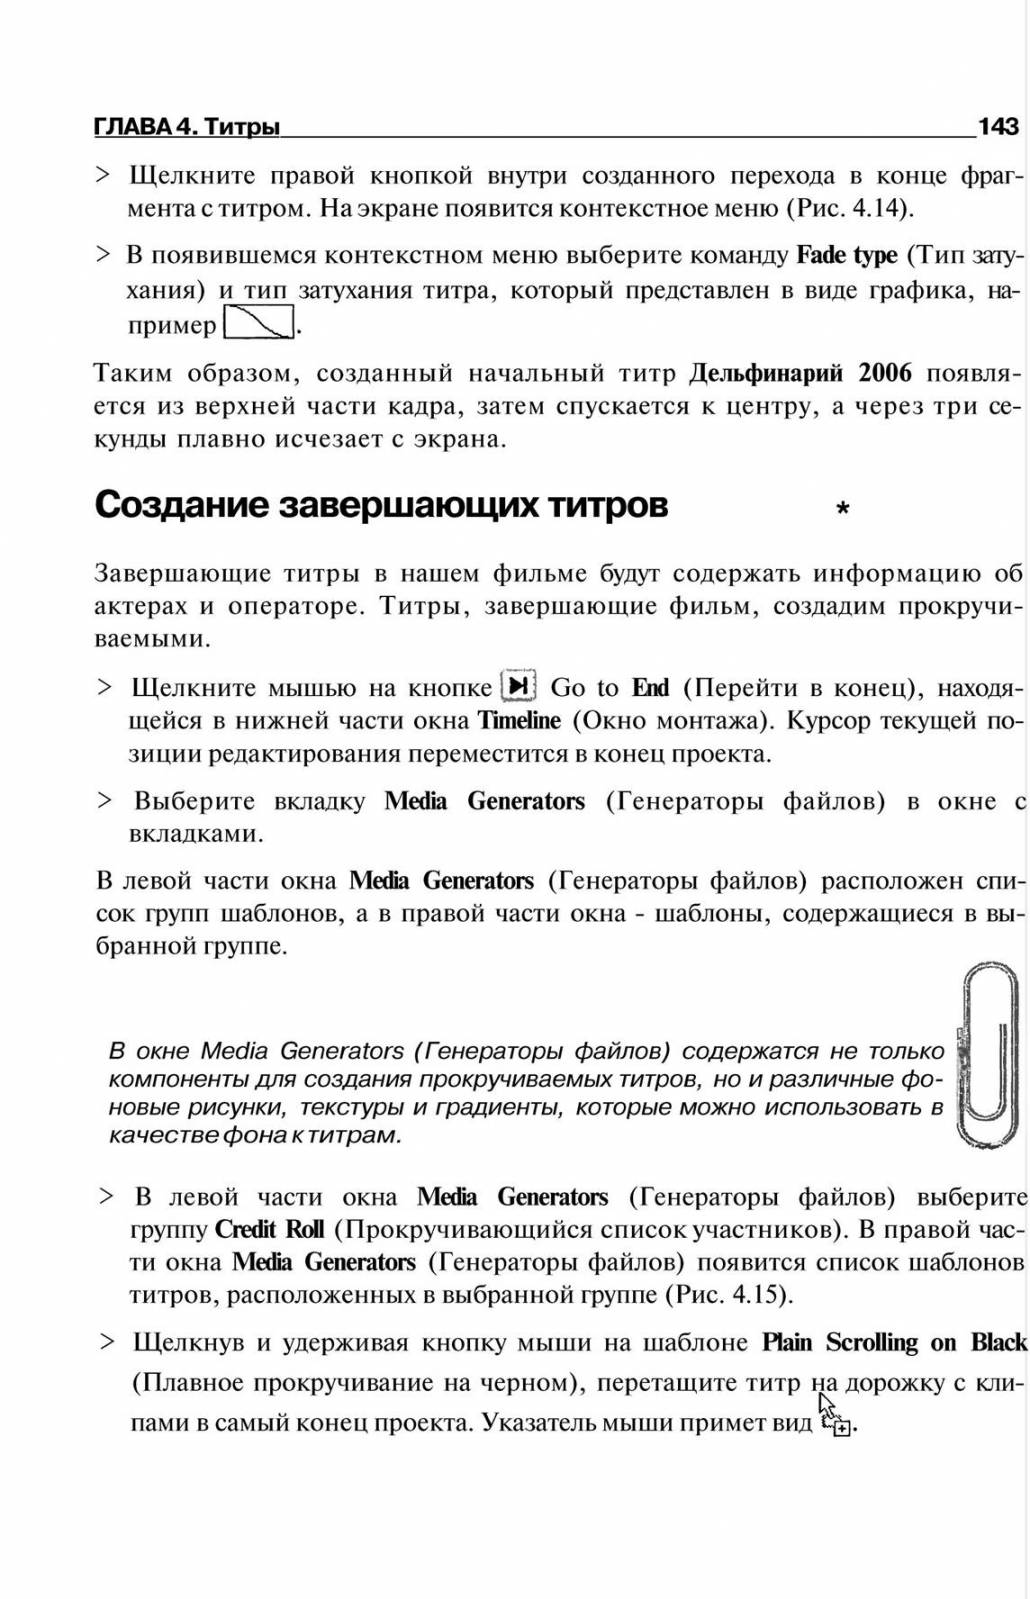 http://redaktori-uroki.3dn.ru/_ph/6/10502152.jpg